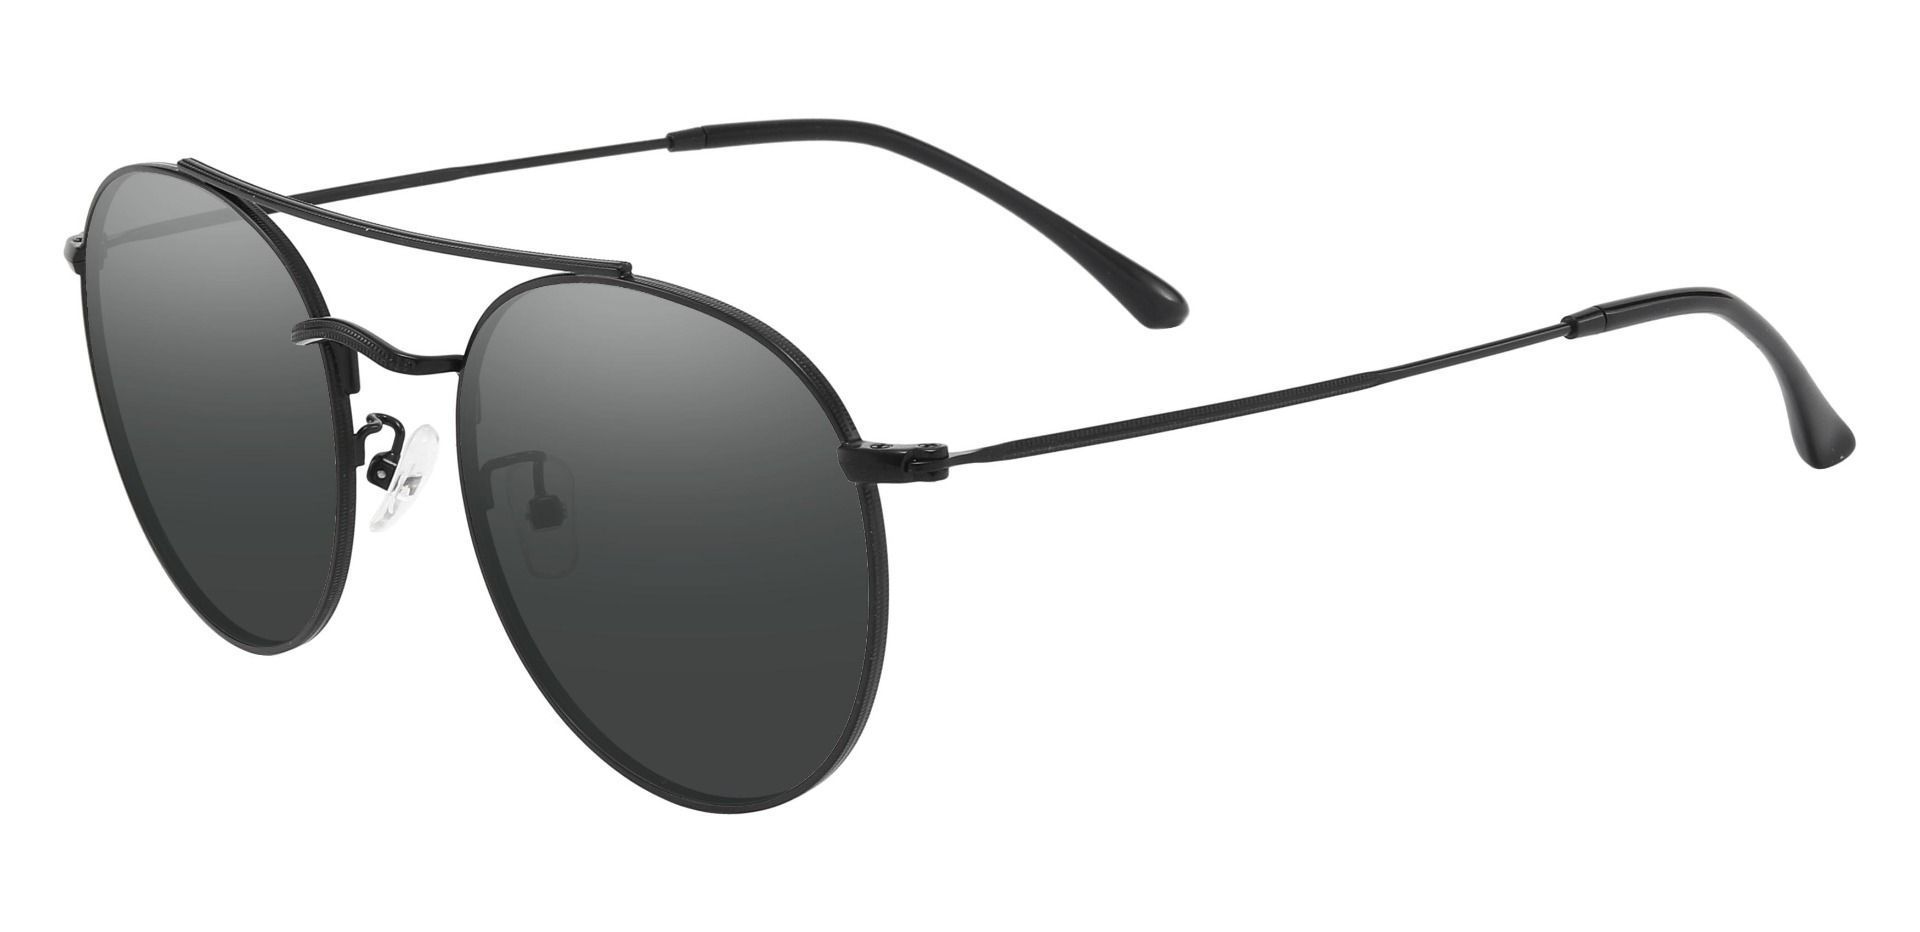 Junction Aviator Lined Bifocal Sunglasses - Black Frame With Gray Lenses